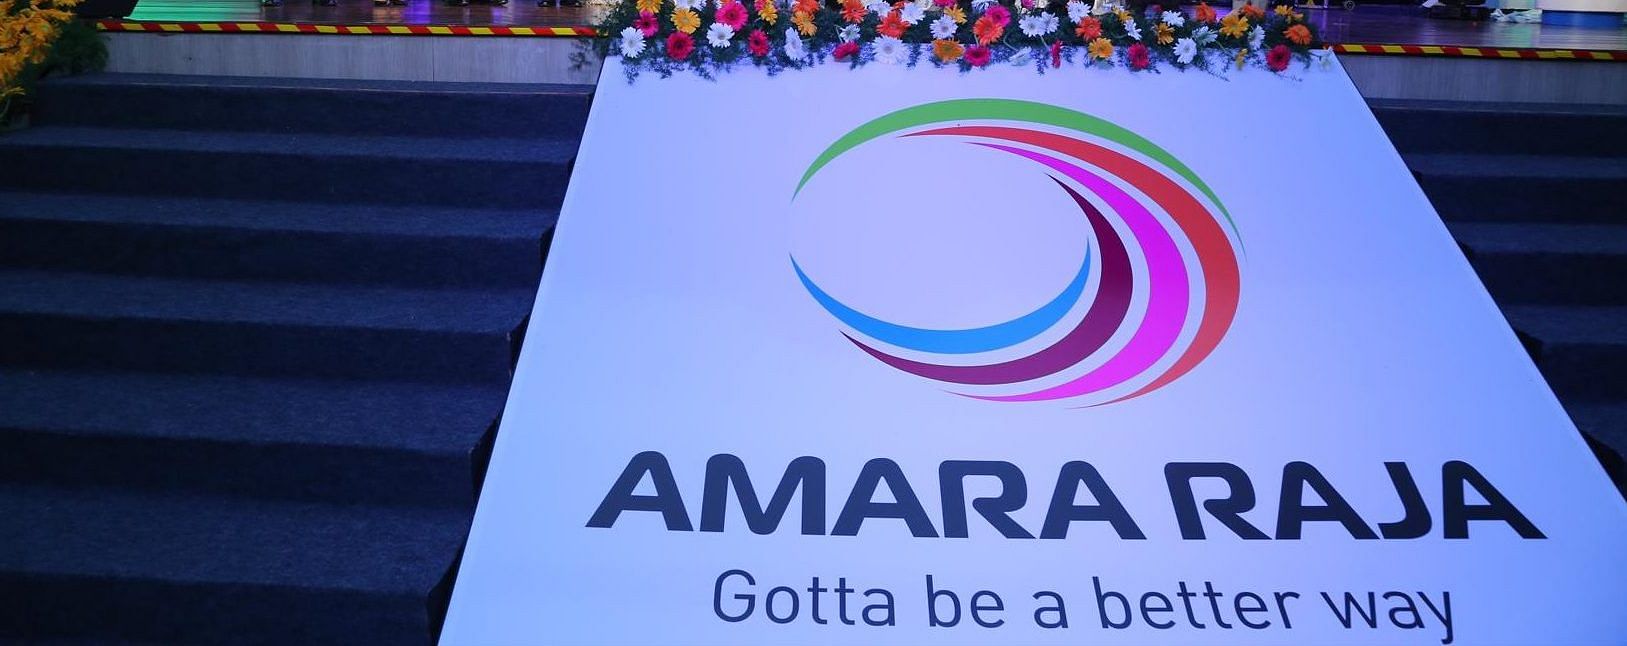 Amara Raja Mahindra Piaggio E Rickshaw Charger at Rs 4000 | Ballabhgarh |  Faridabad | ID: 2852694225362